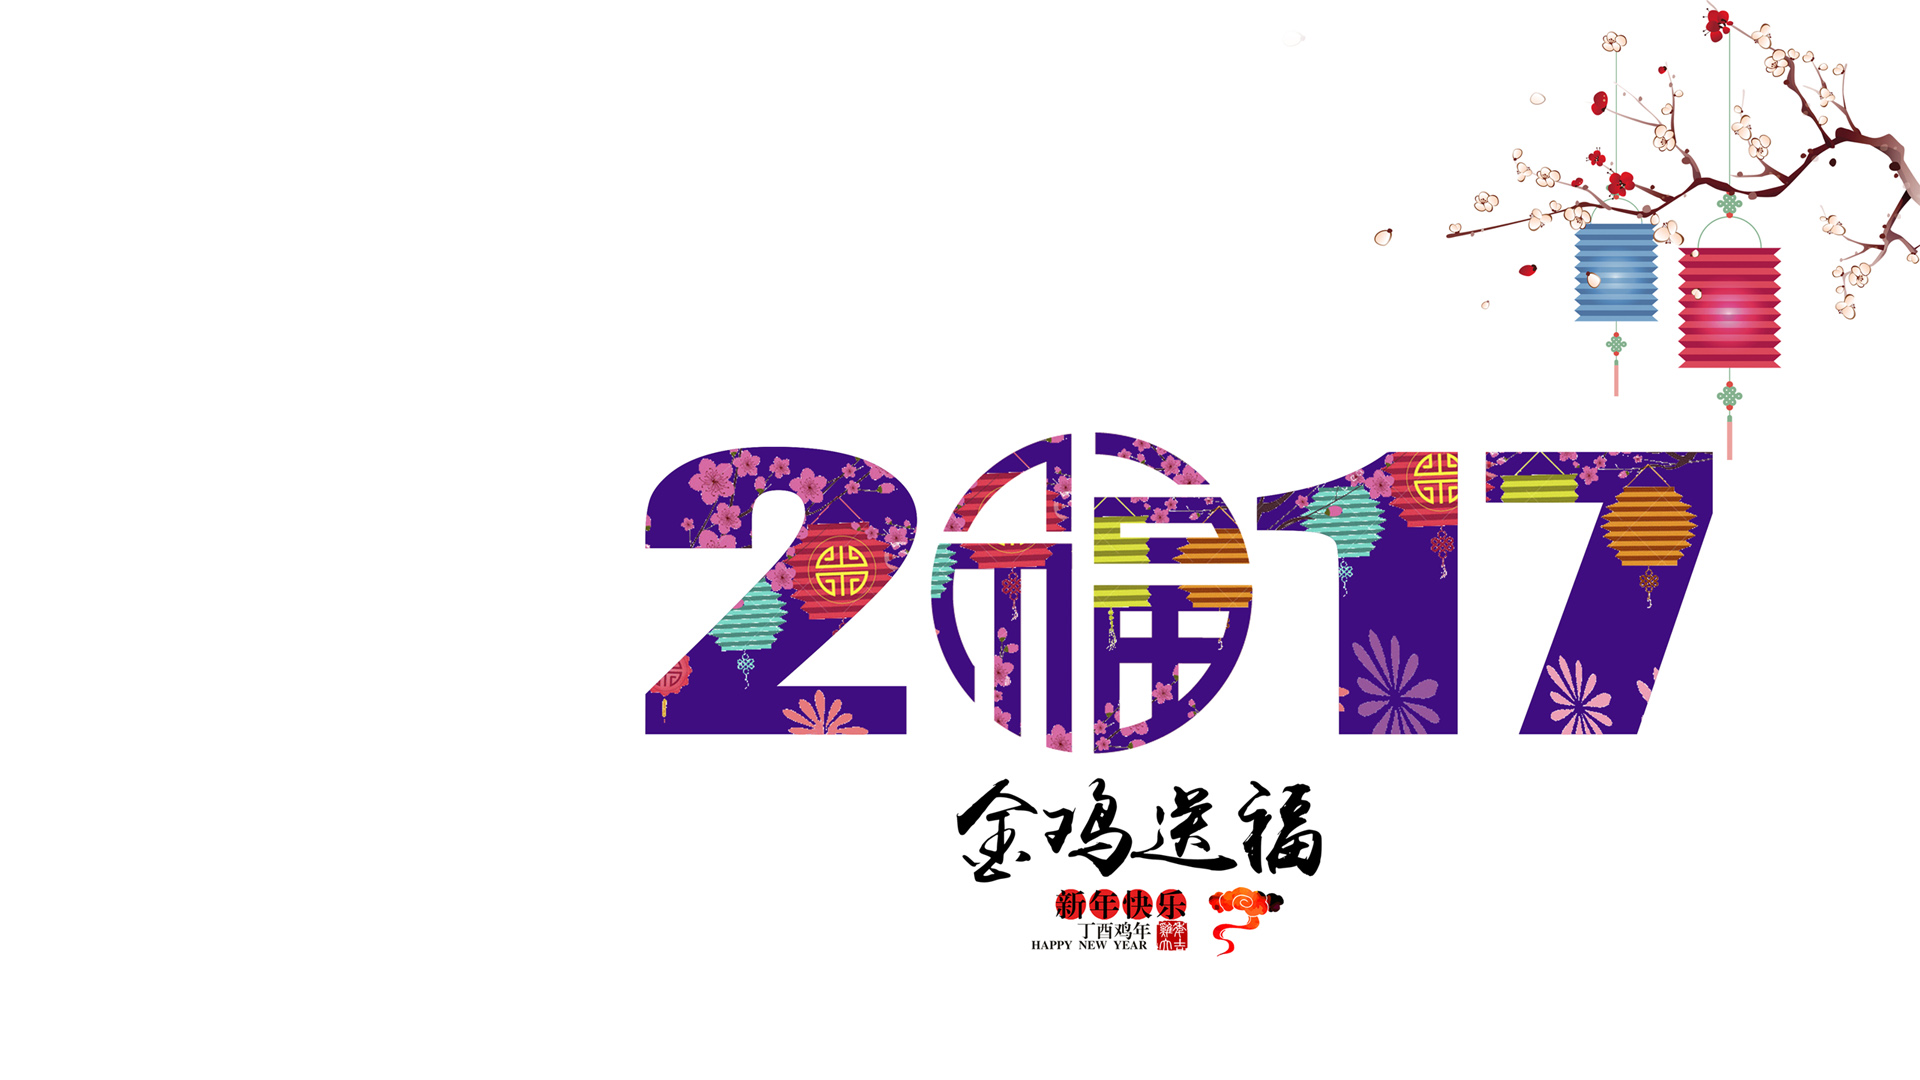 2017金鸡送福 新年快乐桌面壁纸